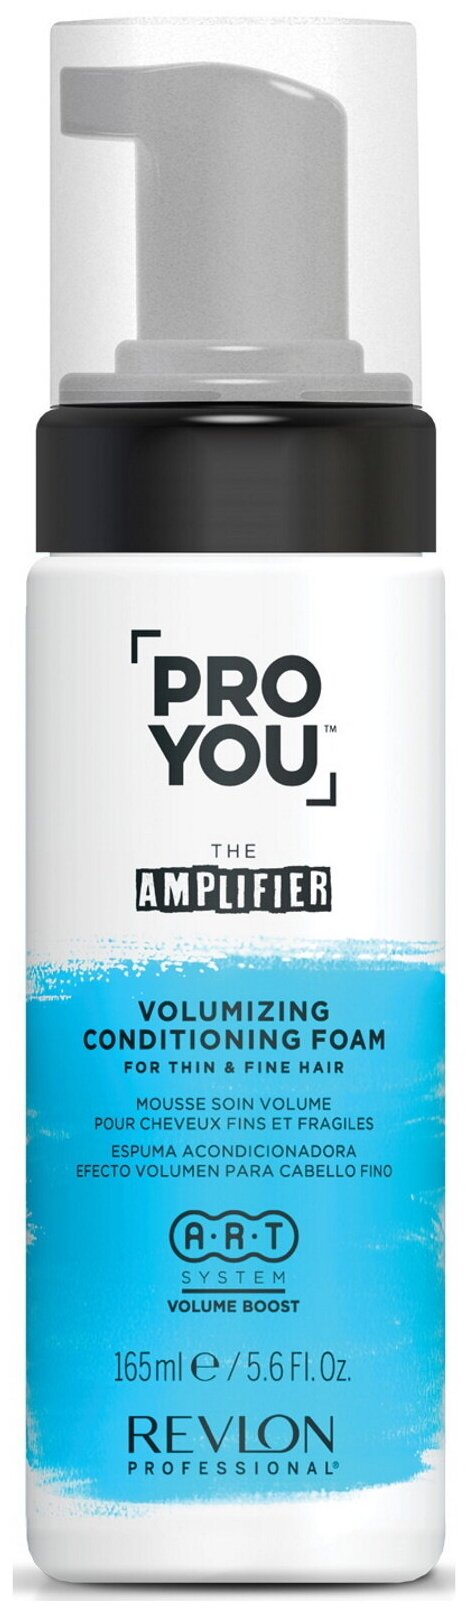 Кондиционирующая пена Revlon для придания объема для тонких волос Pro You The Amplifier Volumizing Foam, 165 мл